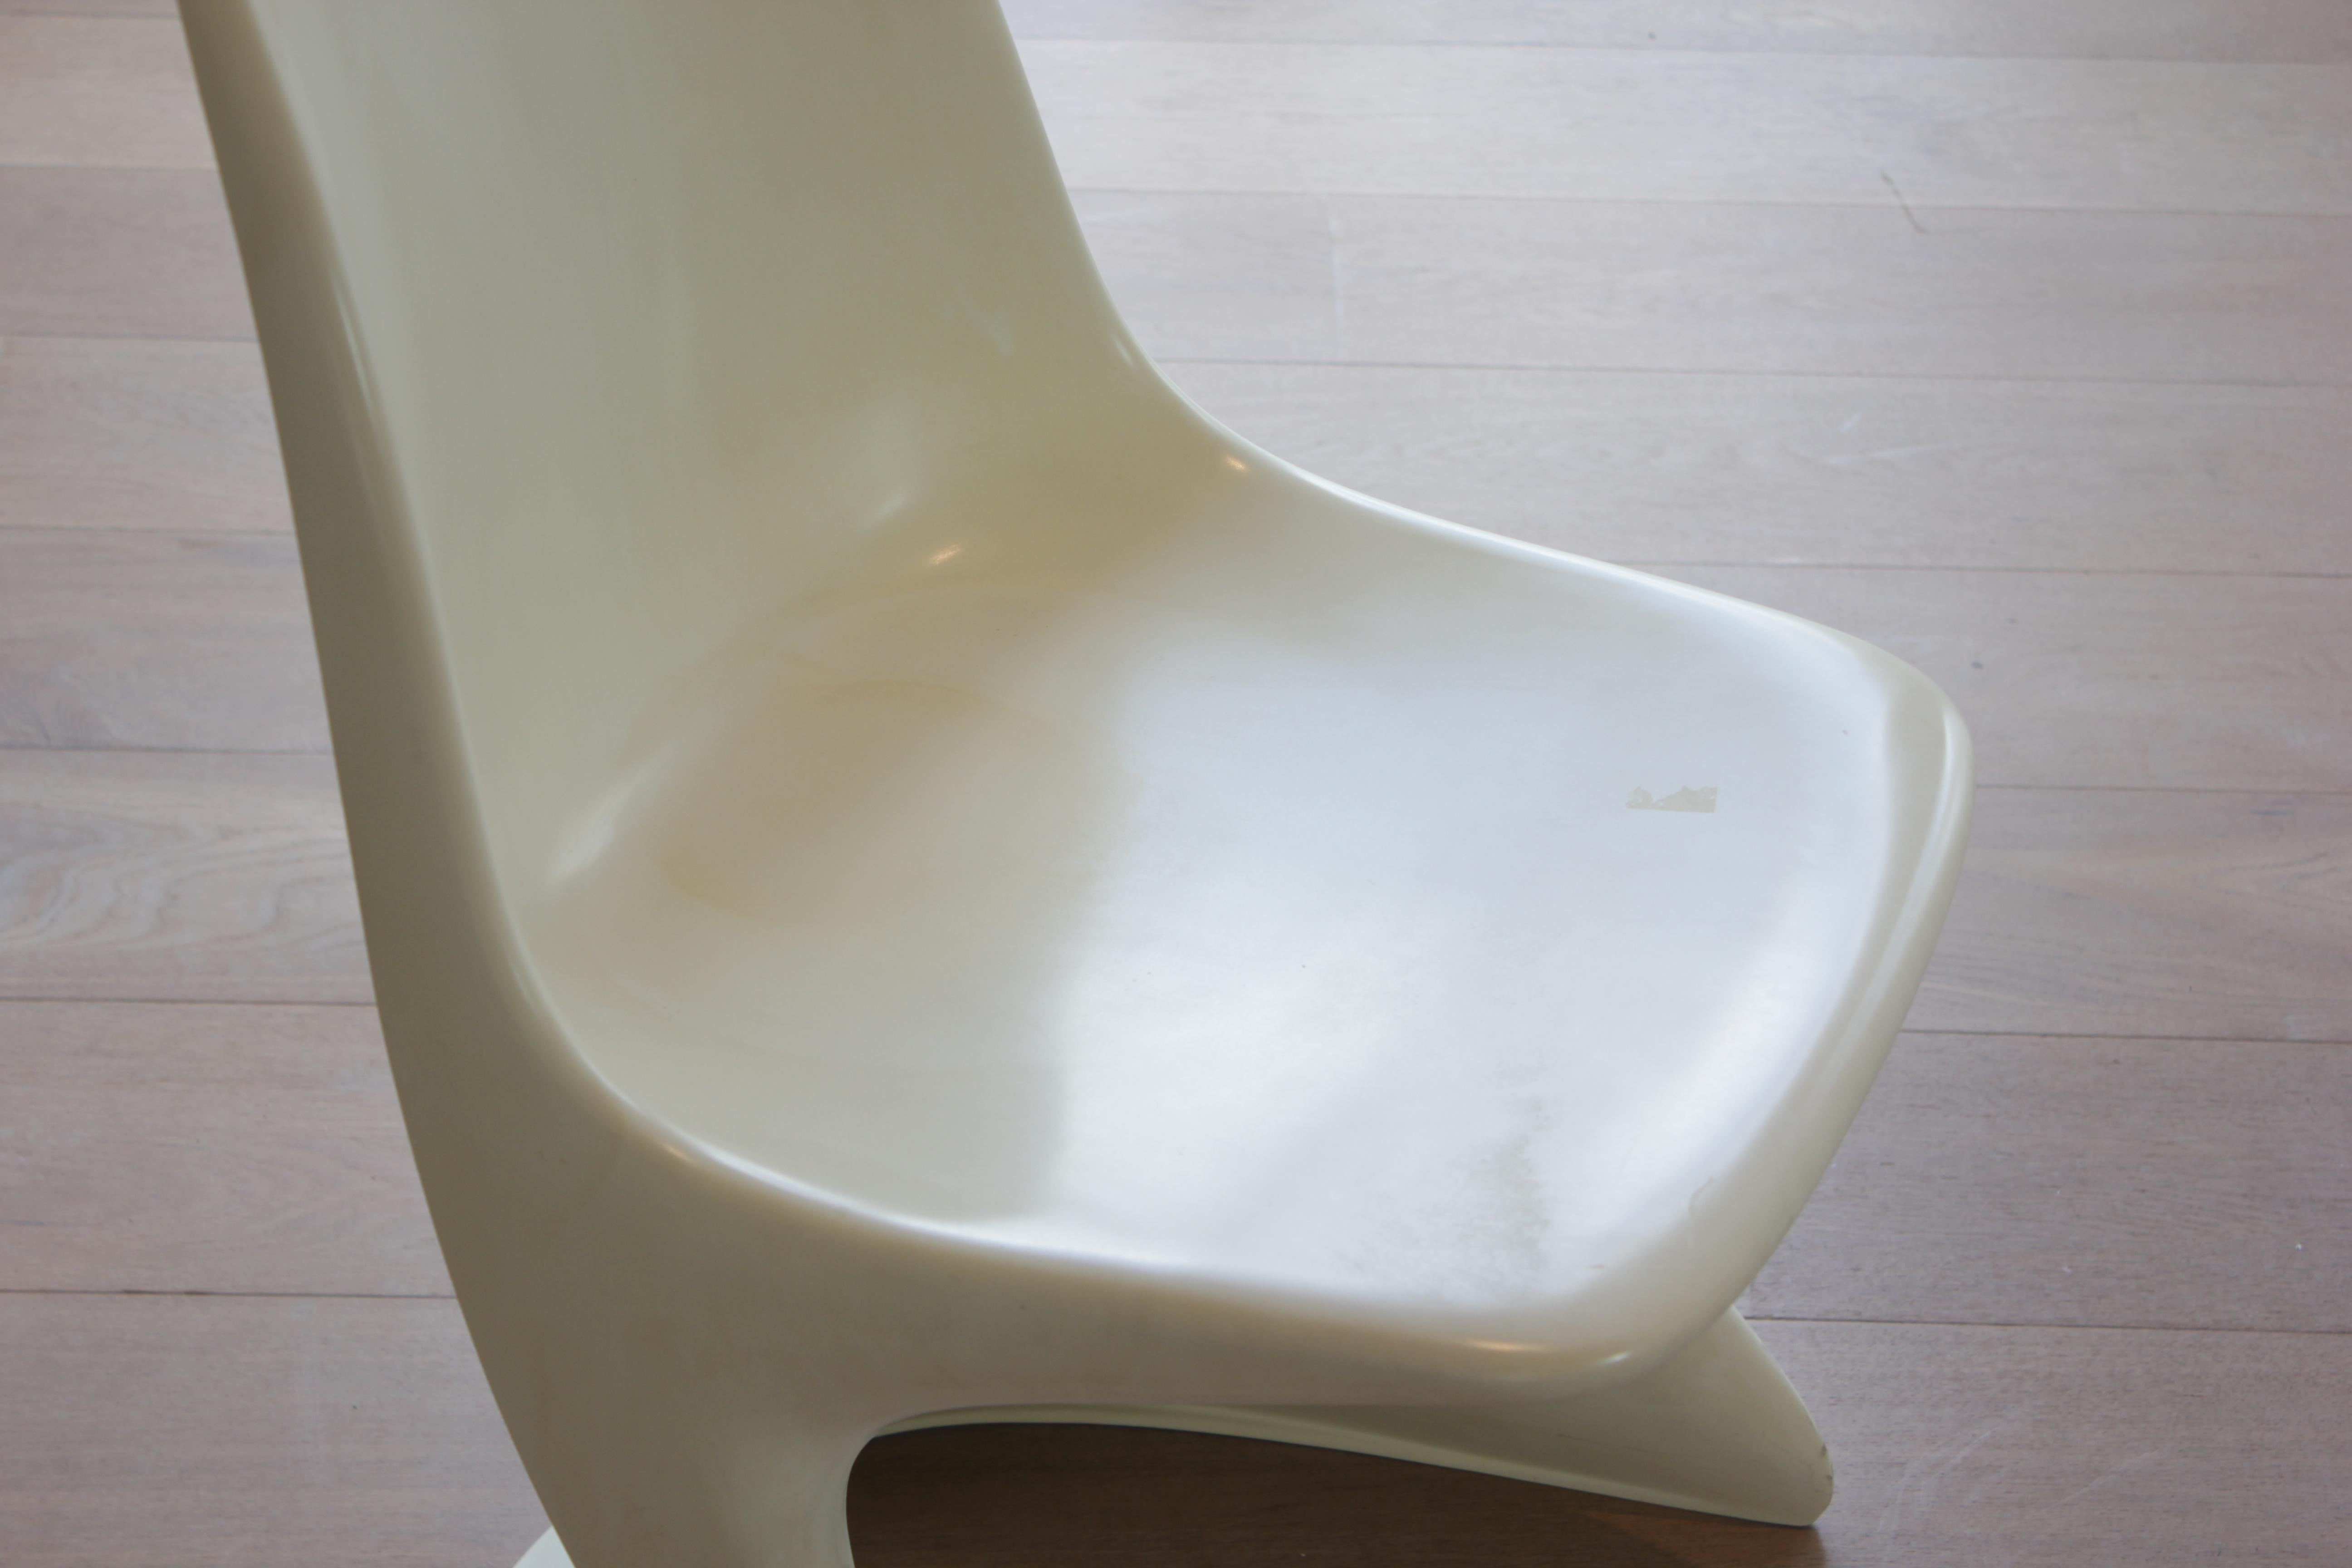 Modell 2004/2005 Casalino-Stuhl von Alexander Begge für Casala, 1970er Jahre (20. Jahrhundert)